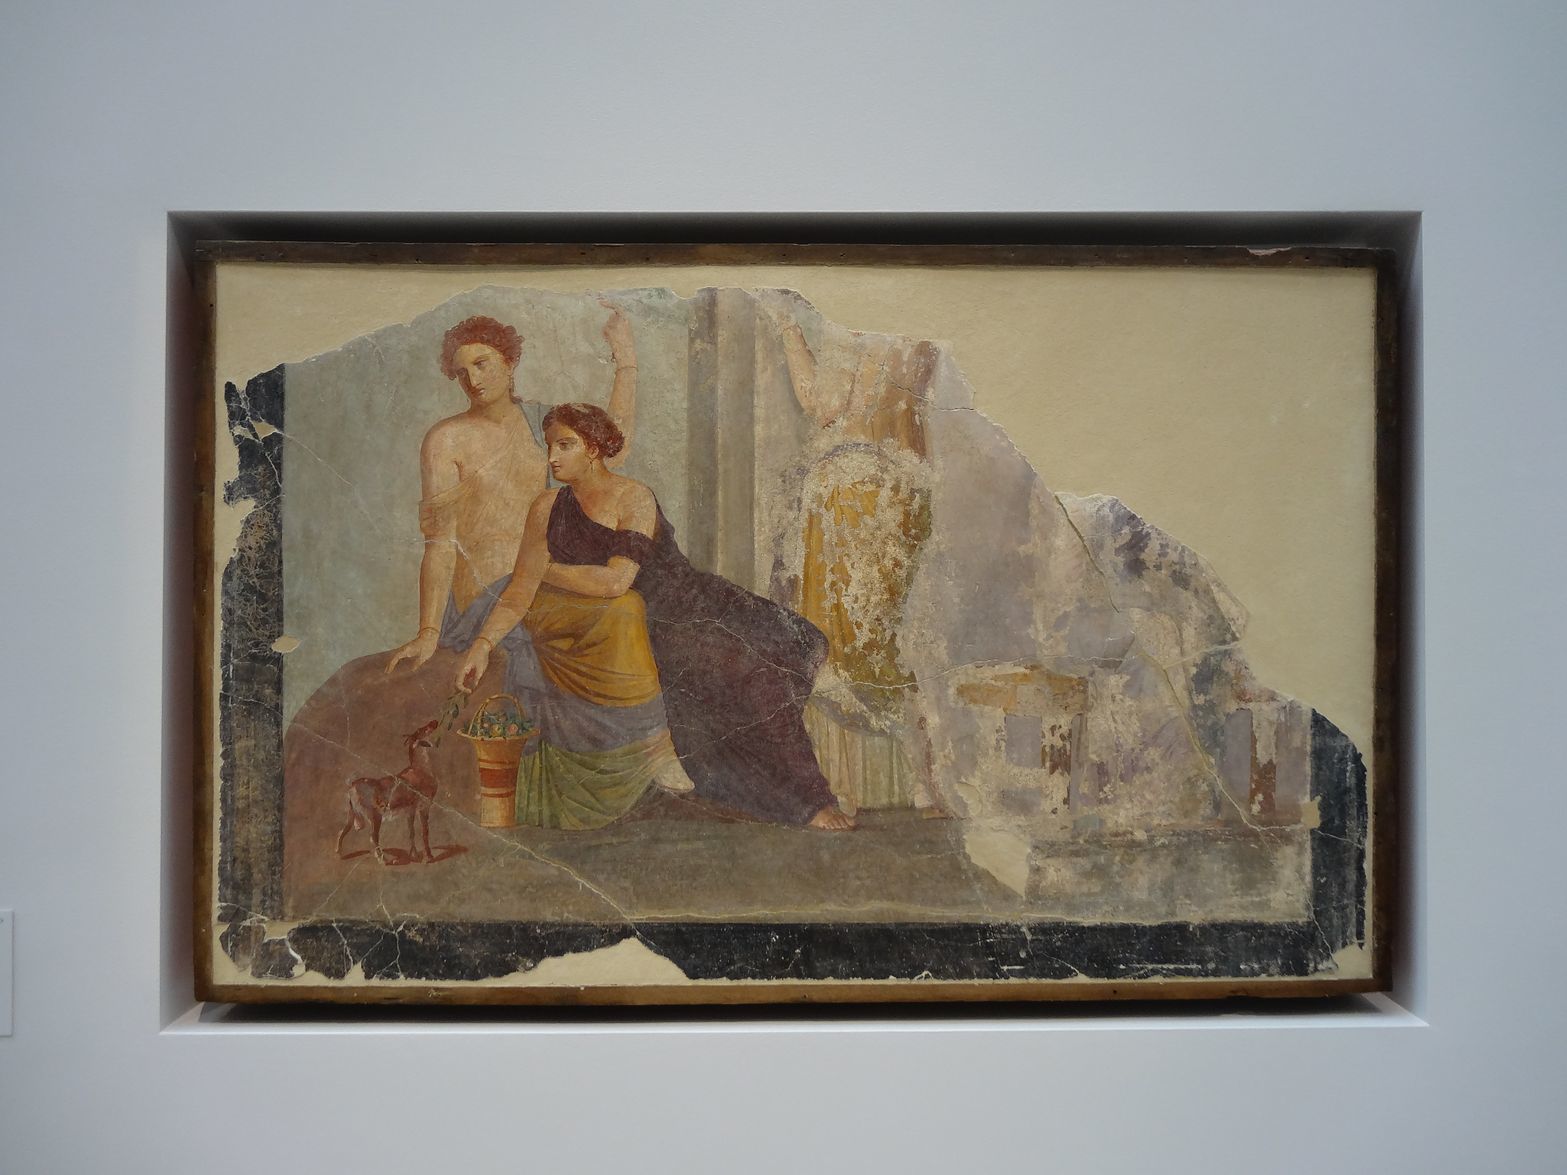 ou ces fragments de peinture murale de Pompéi (Ier siècle après JC)